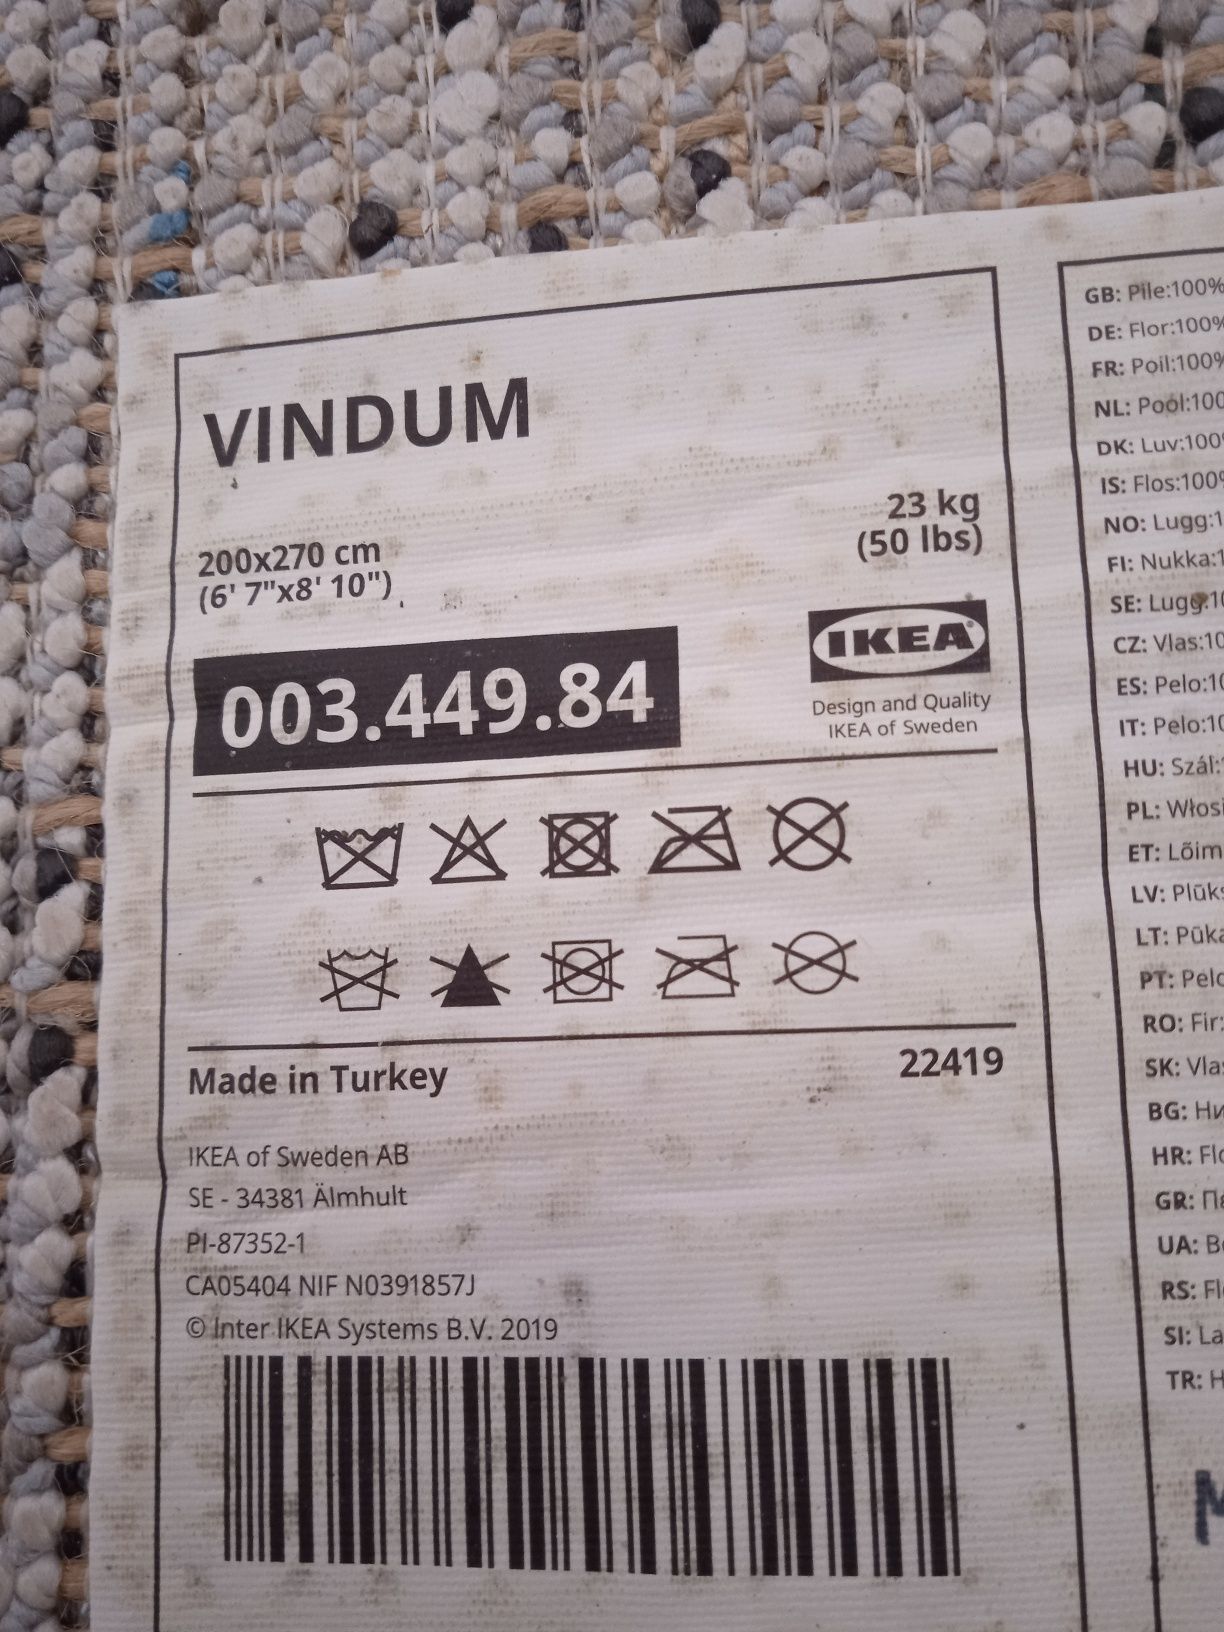 SUPER PROMOÇÃO!! Tapete / Carpete Vindum IKEA 200 X 270